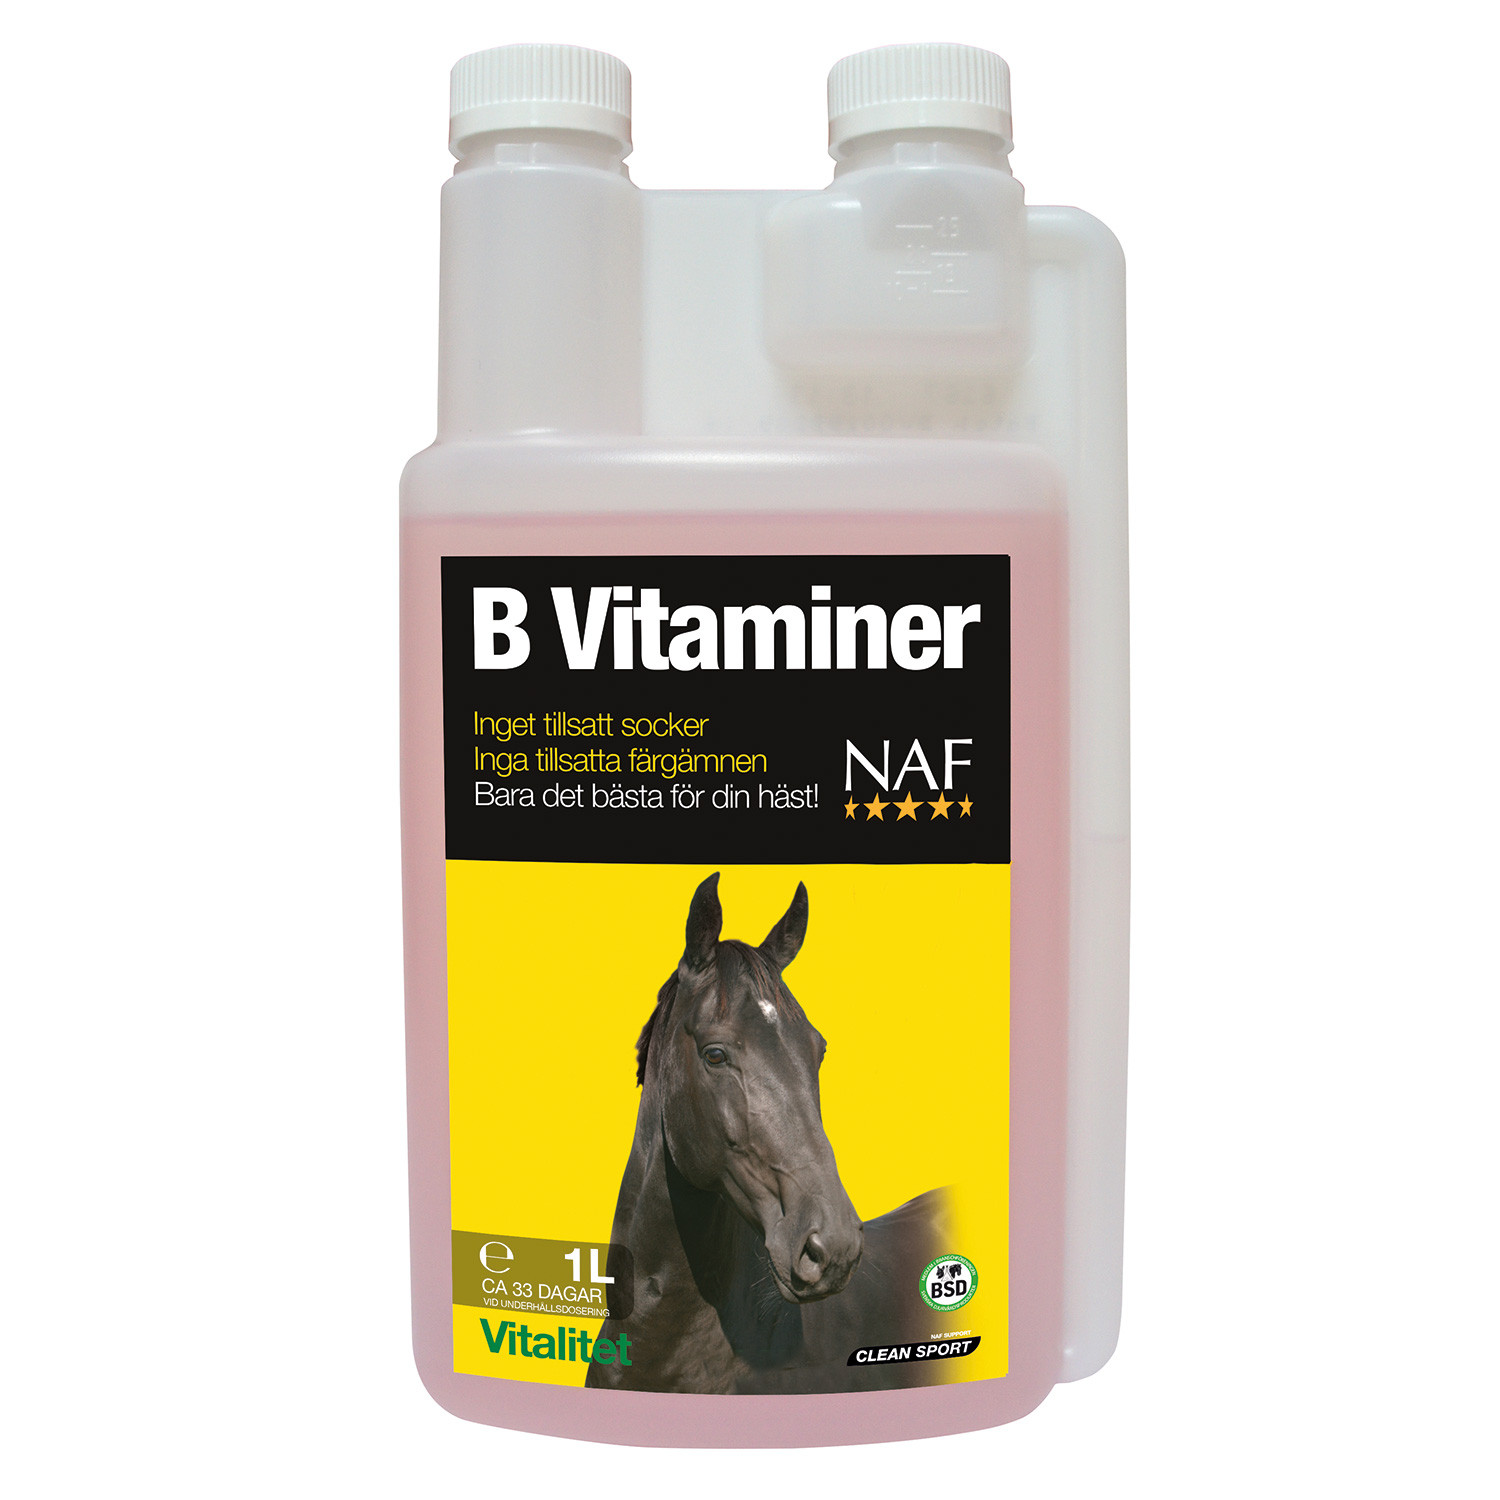 B-vitamin naf